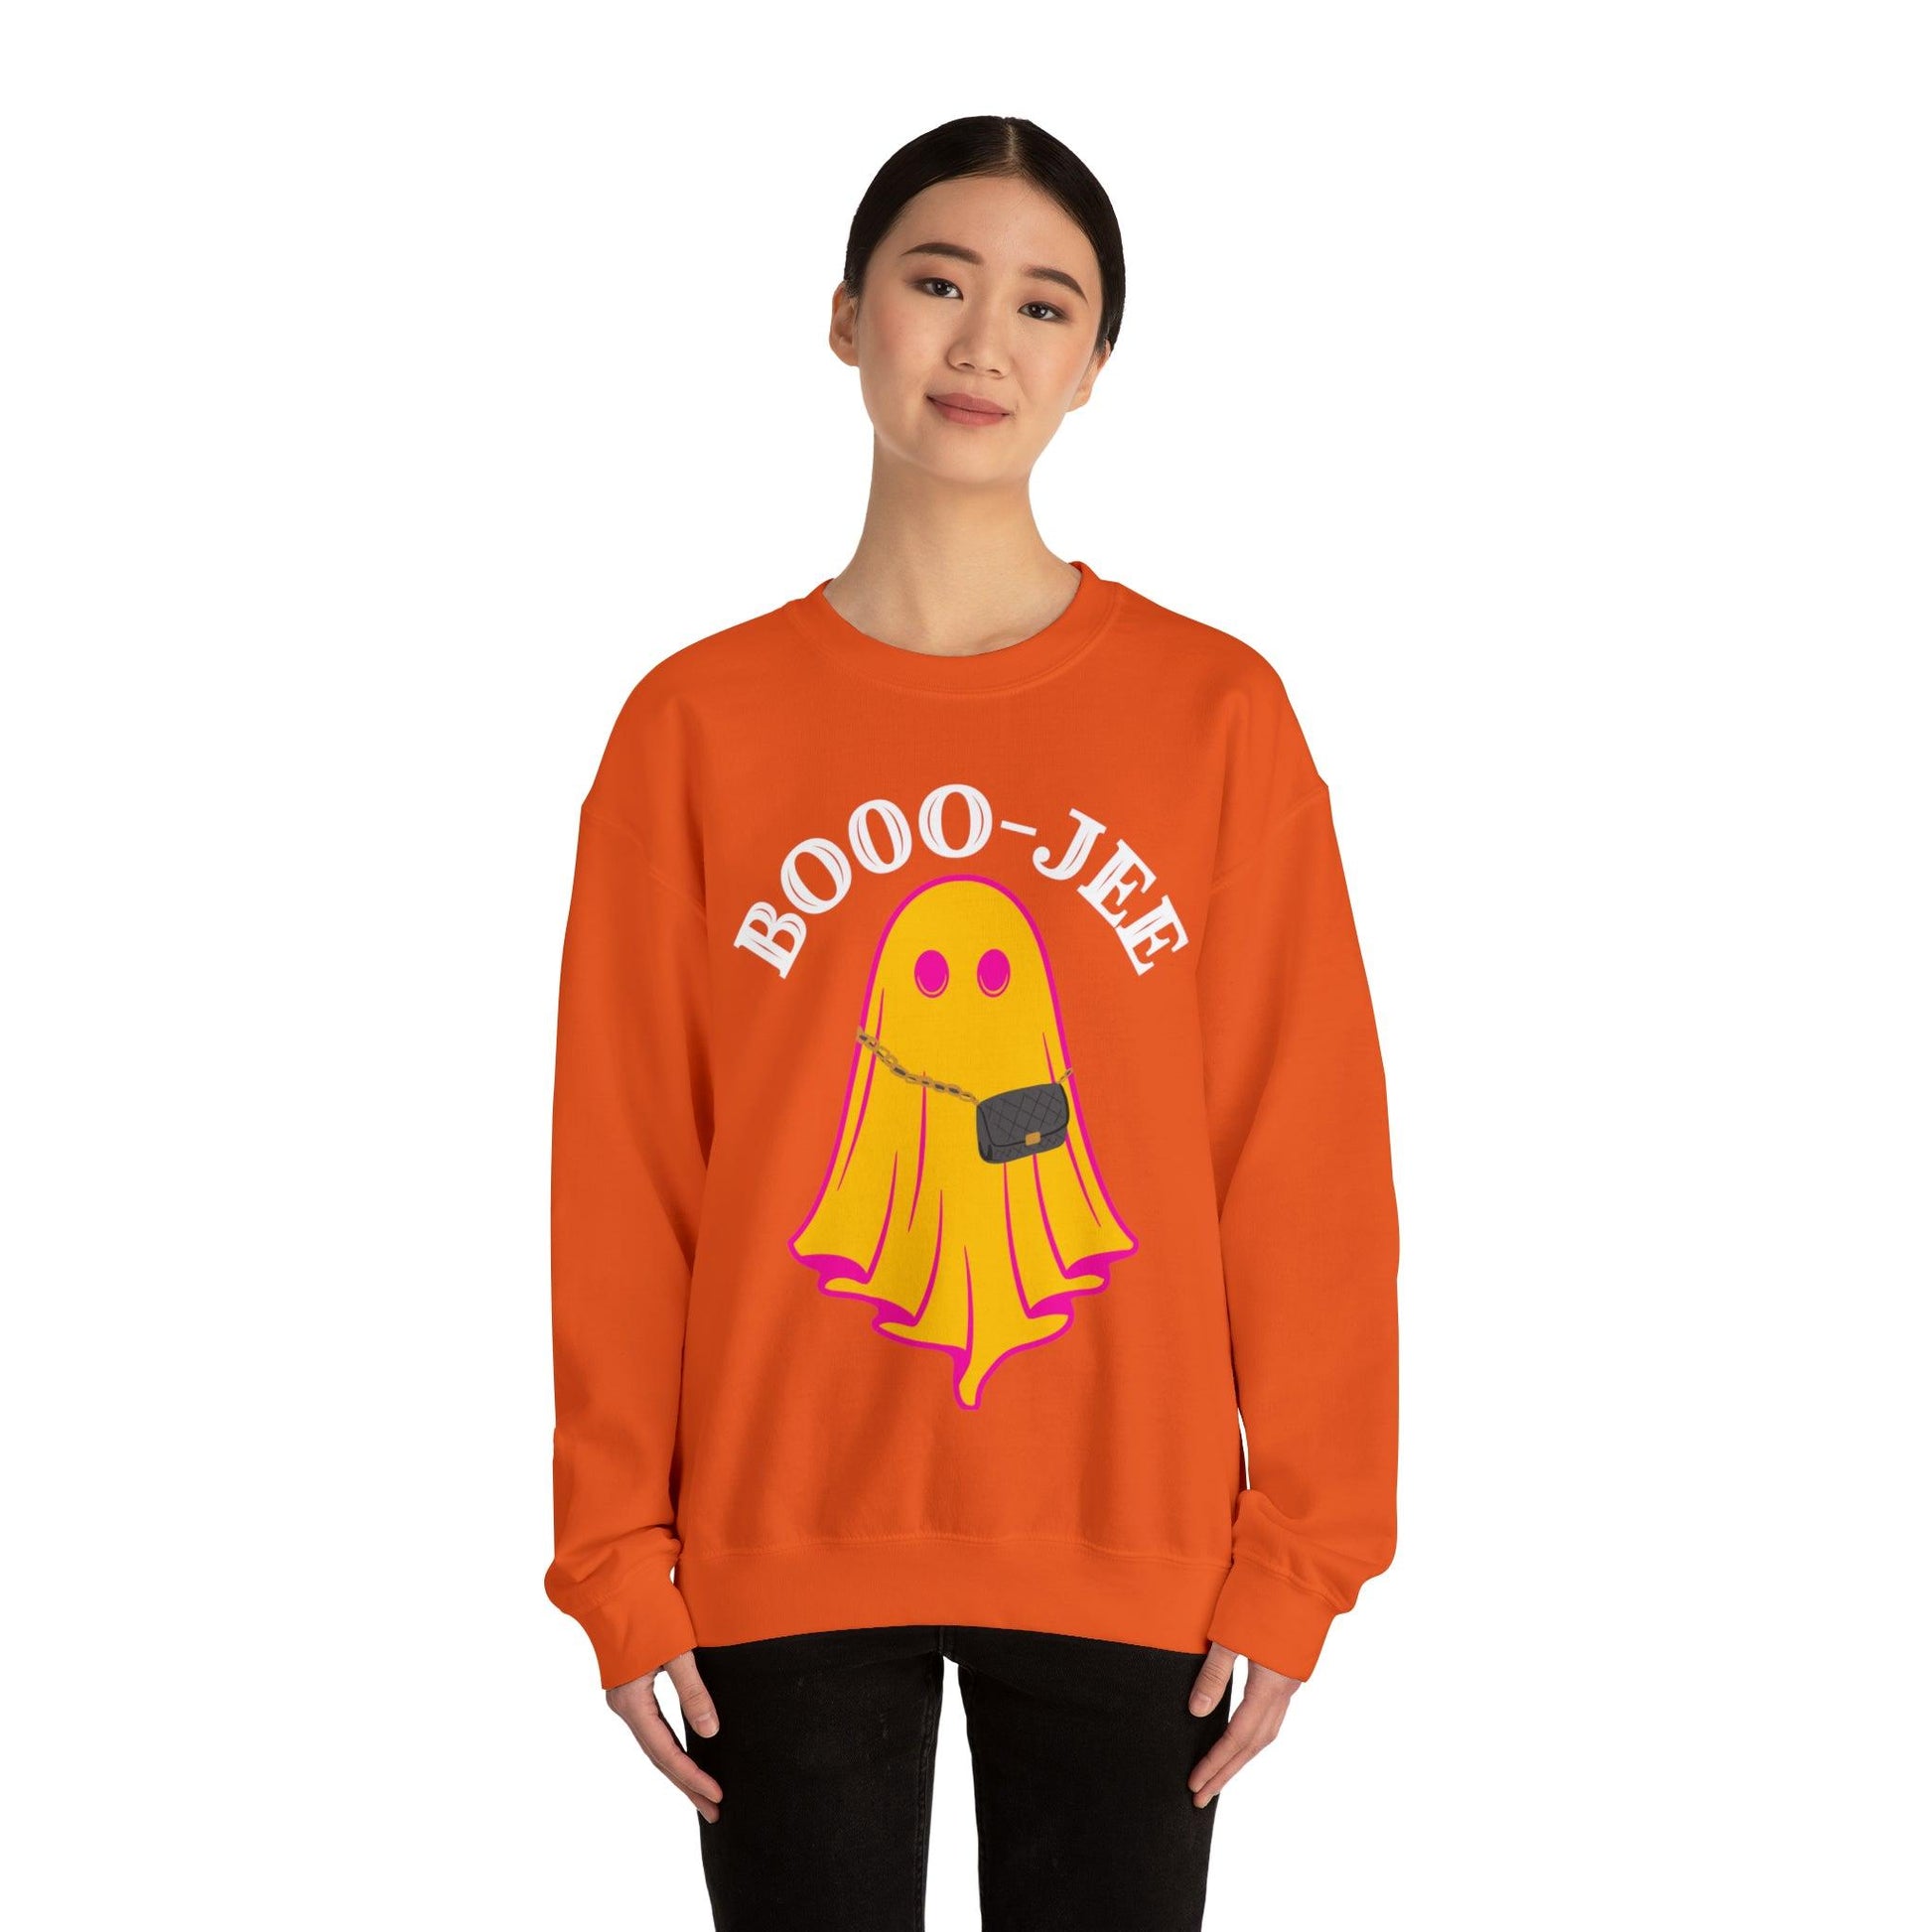 Booo-Jee Sweatshirt, Boo Halloween Sweatshirt, Spooky Ghost Sweatshirt, Boo Jee Shirt, Halloween Ghost Sweatshirt, Halloween Boo Shirt - Giftsmojo